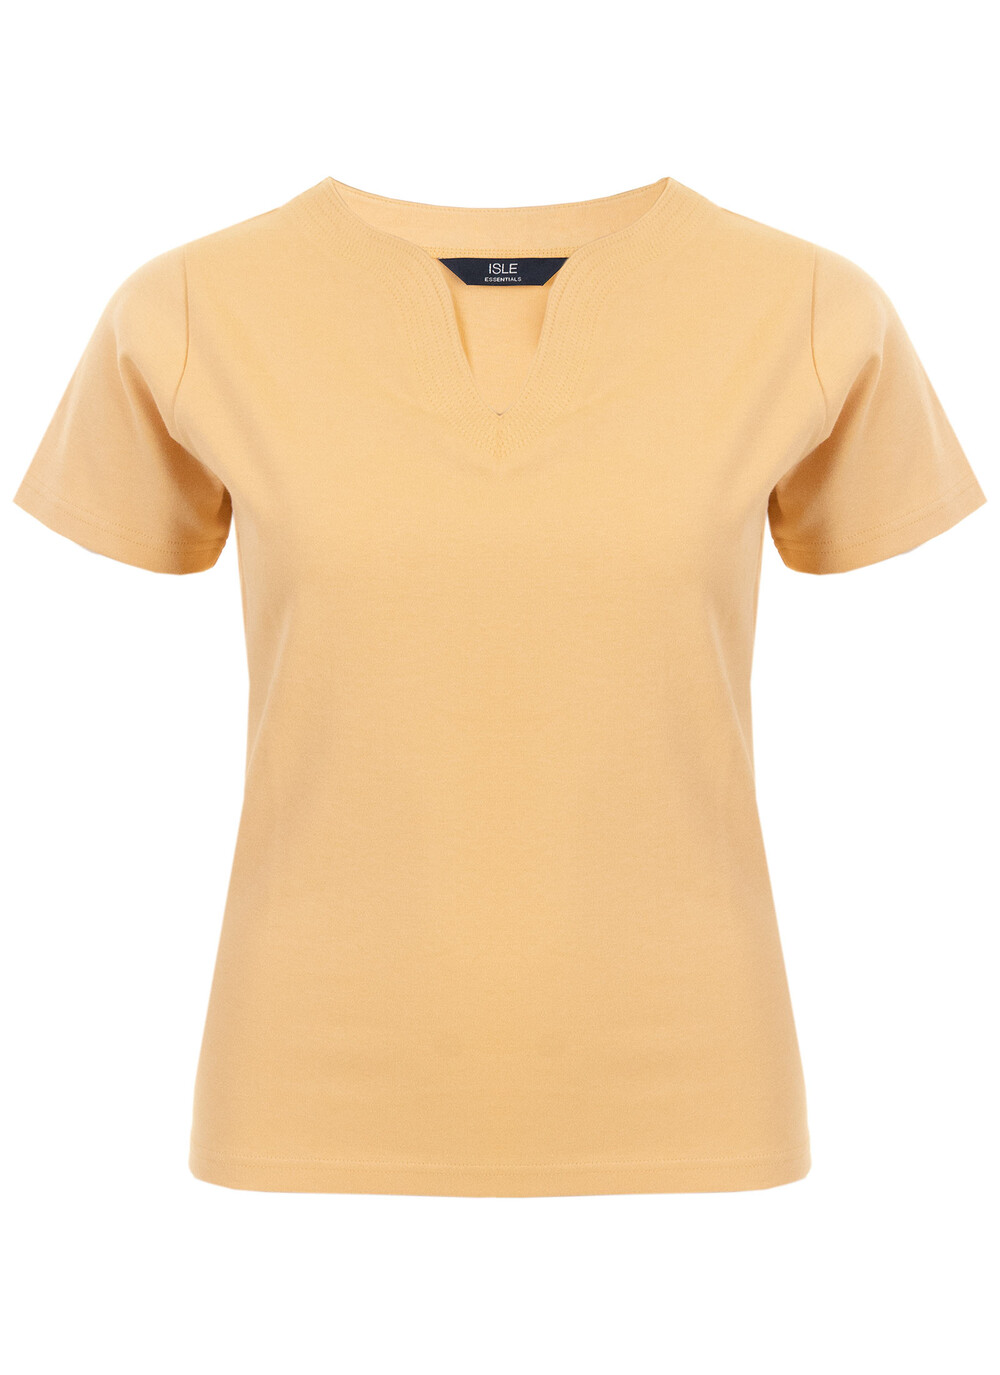 Isle Female Yellow Notch Neck T Shirt | EWM | EWM